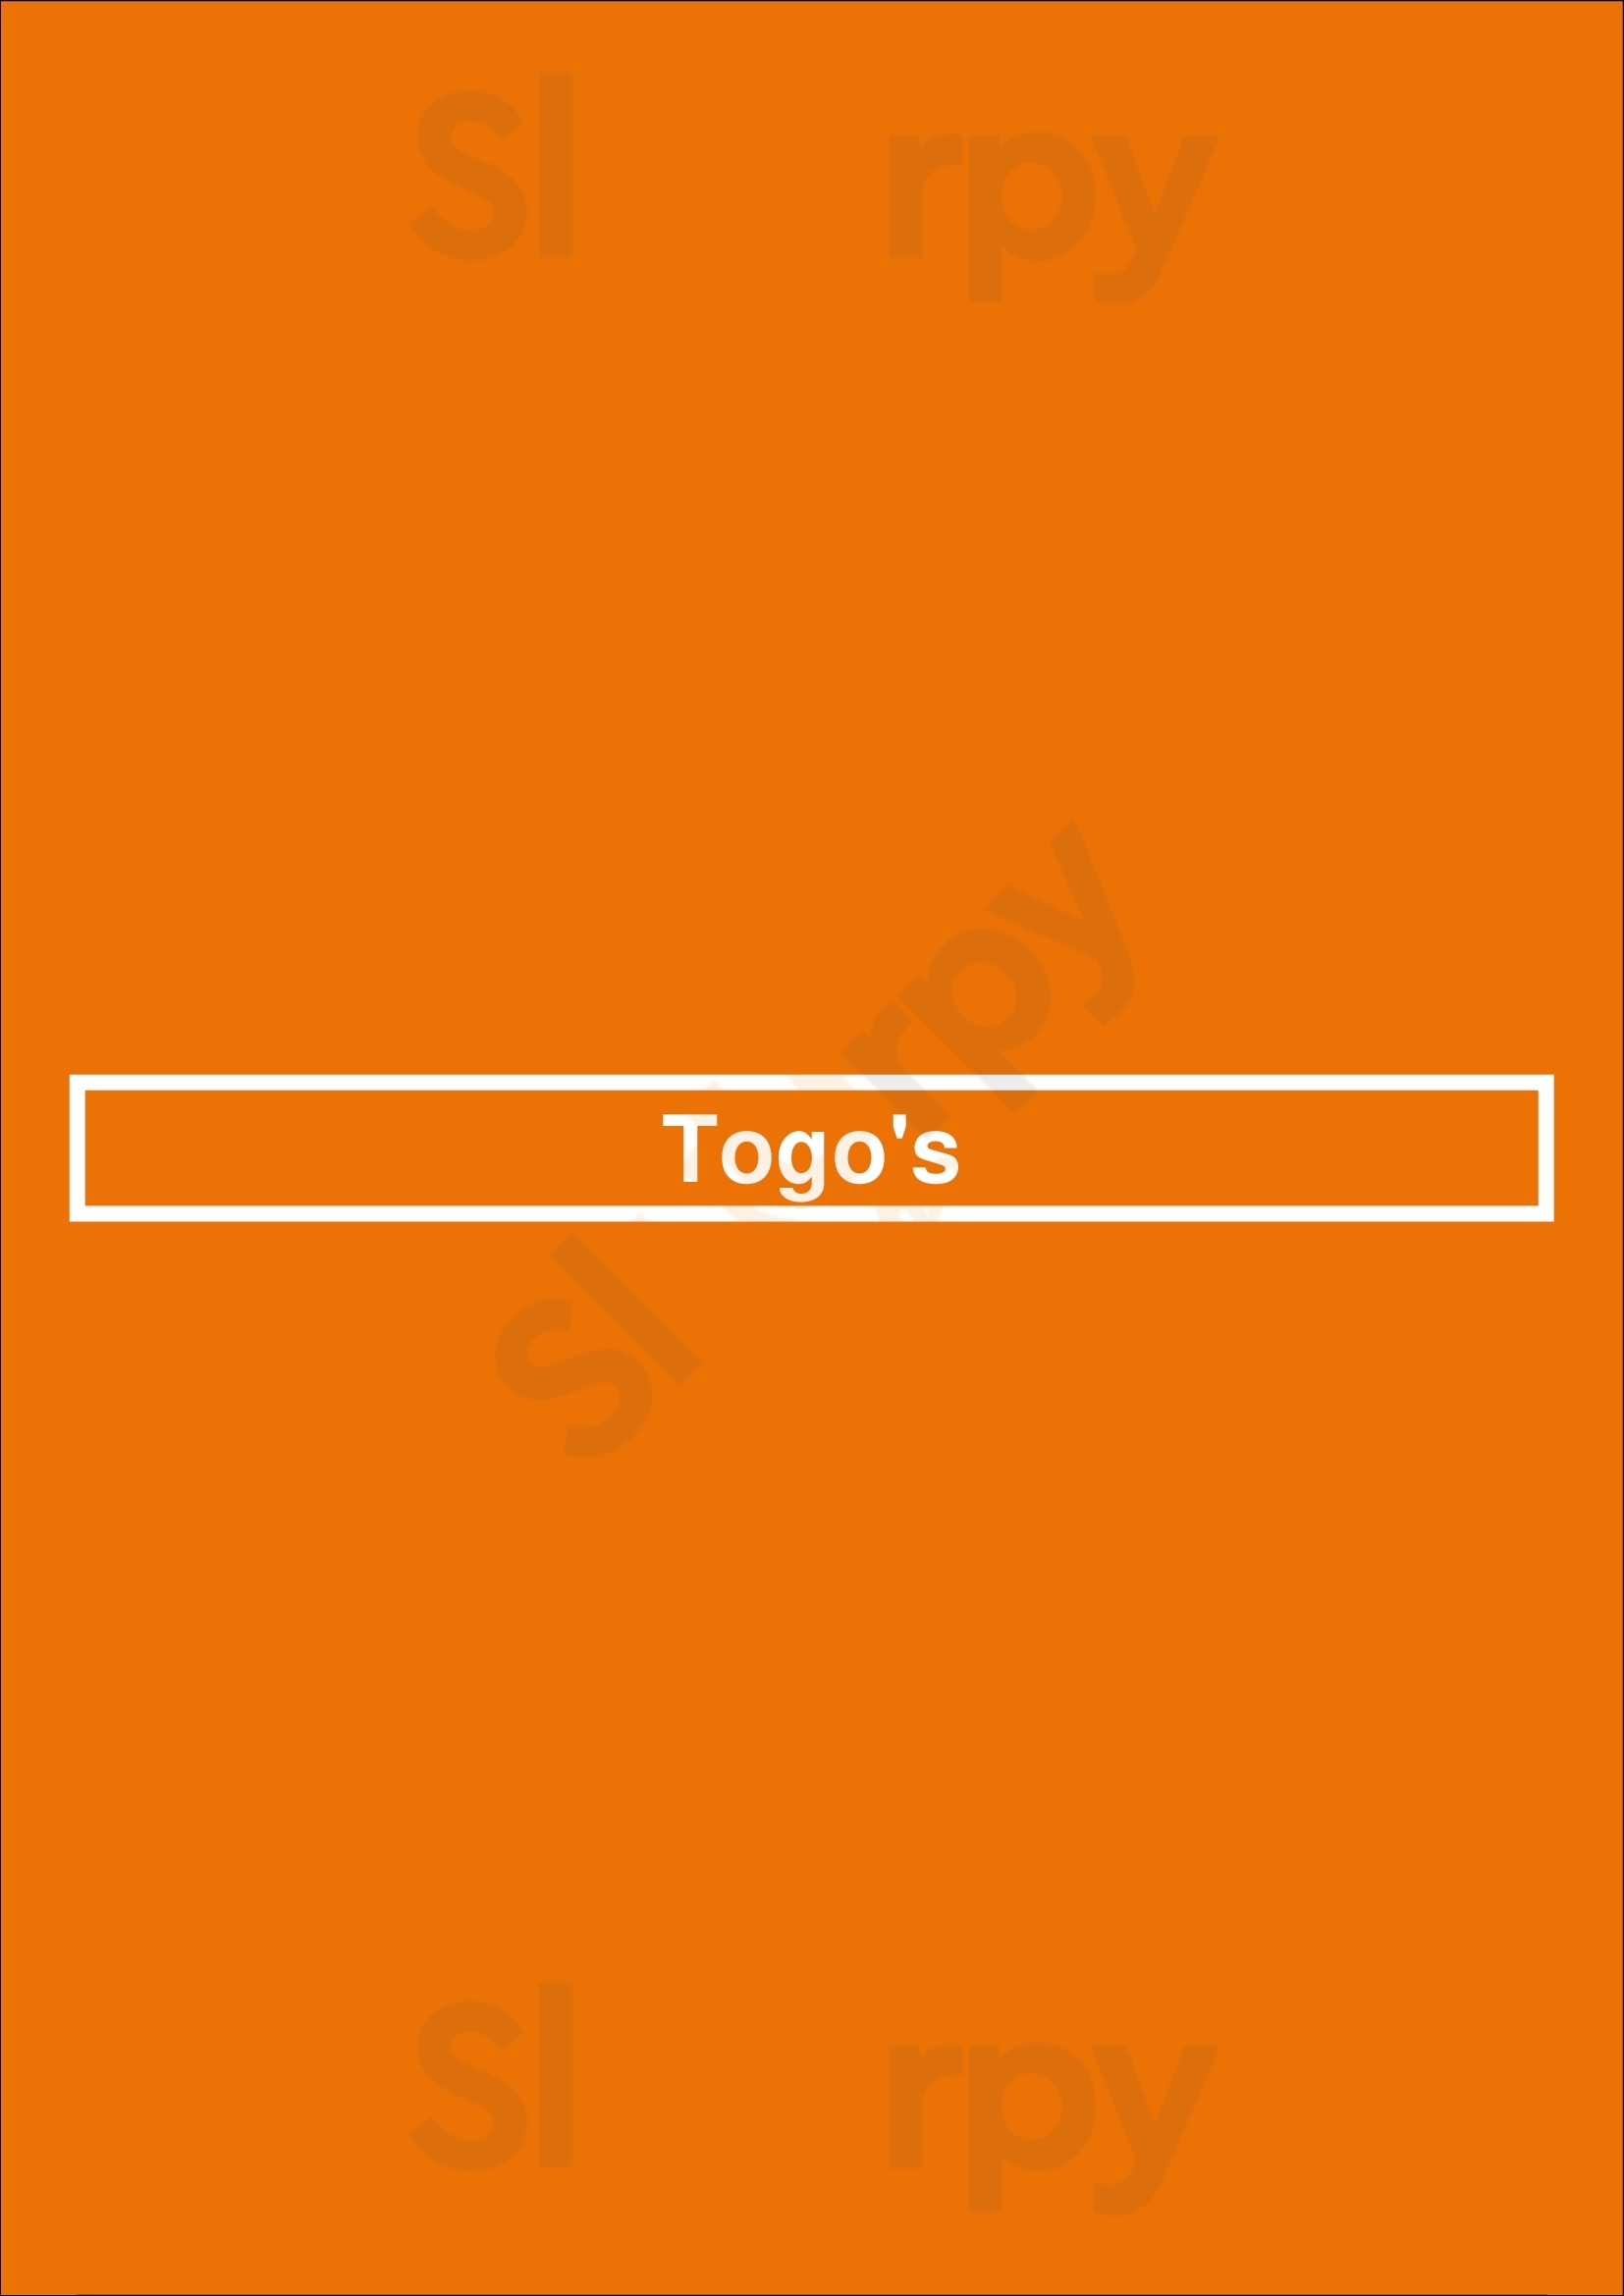 Togo's Los Angeles Menu - 1